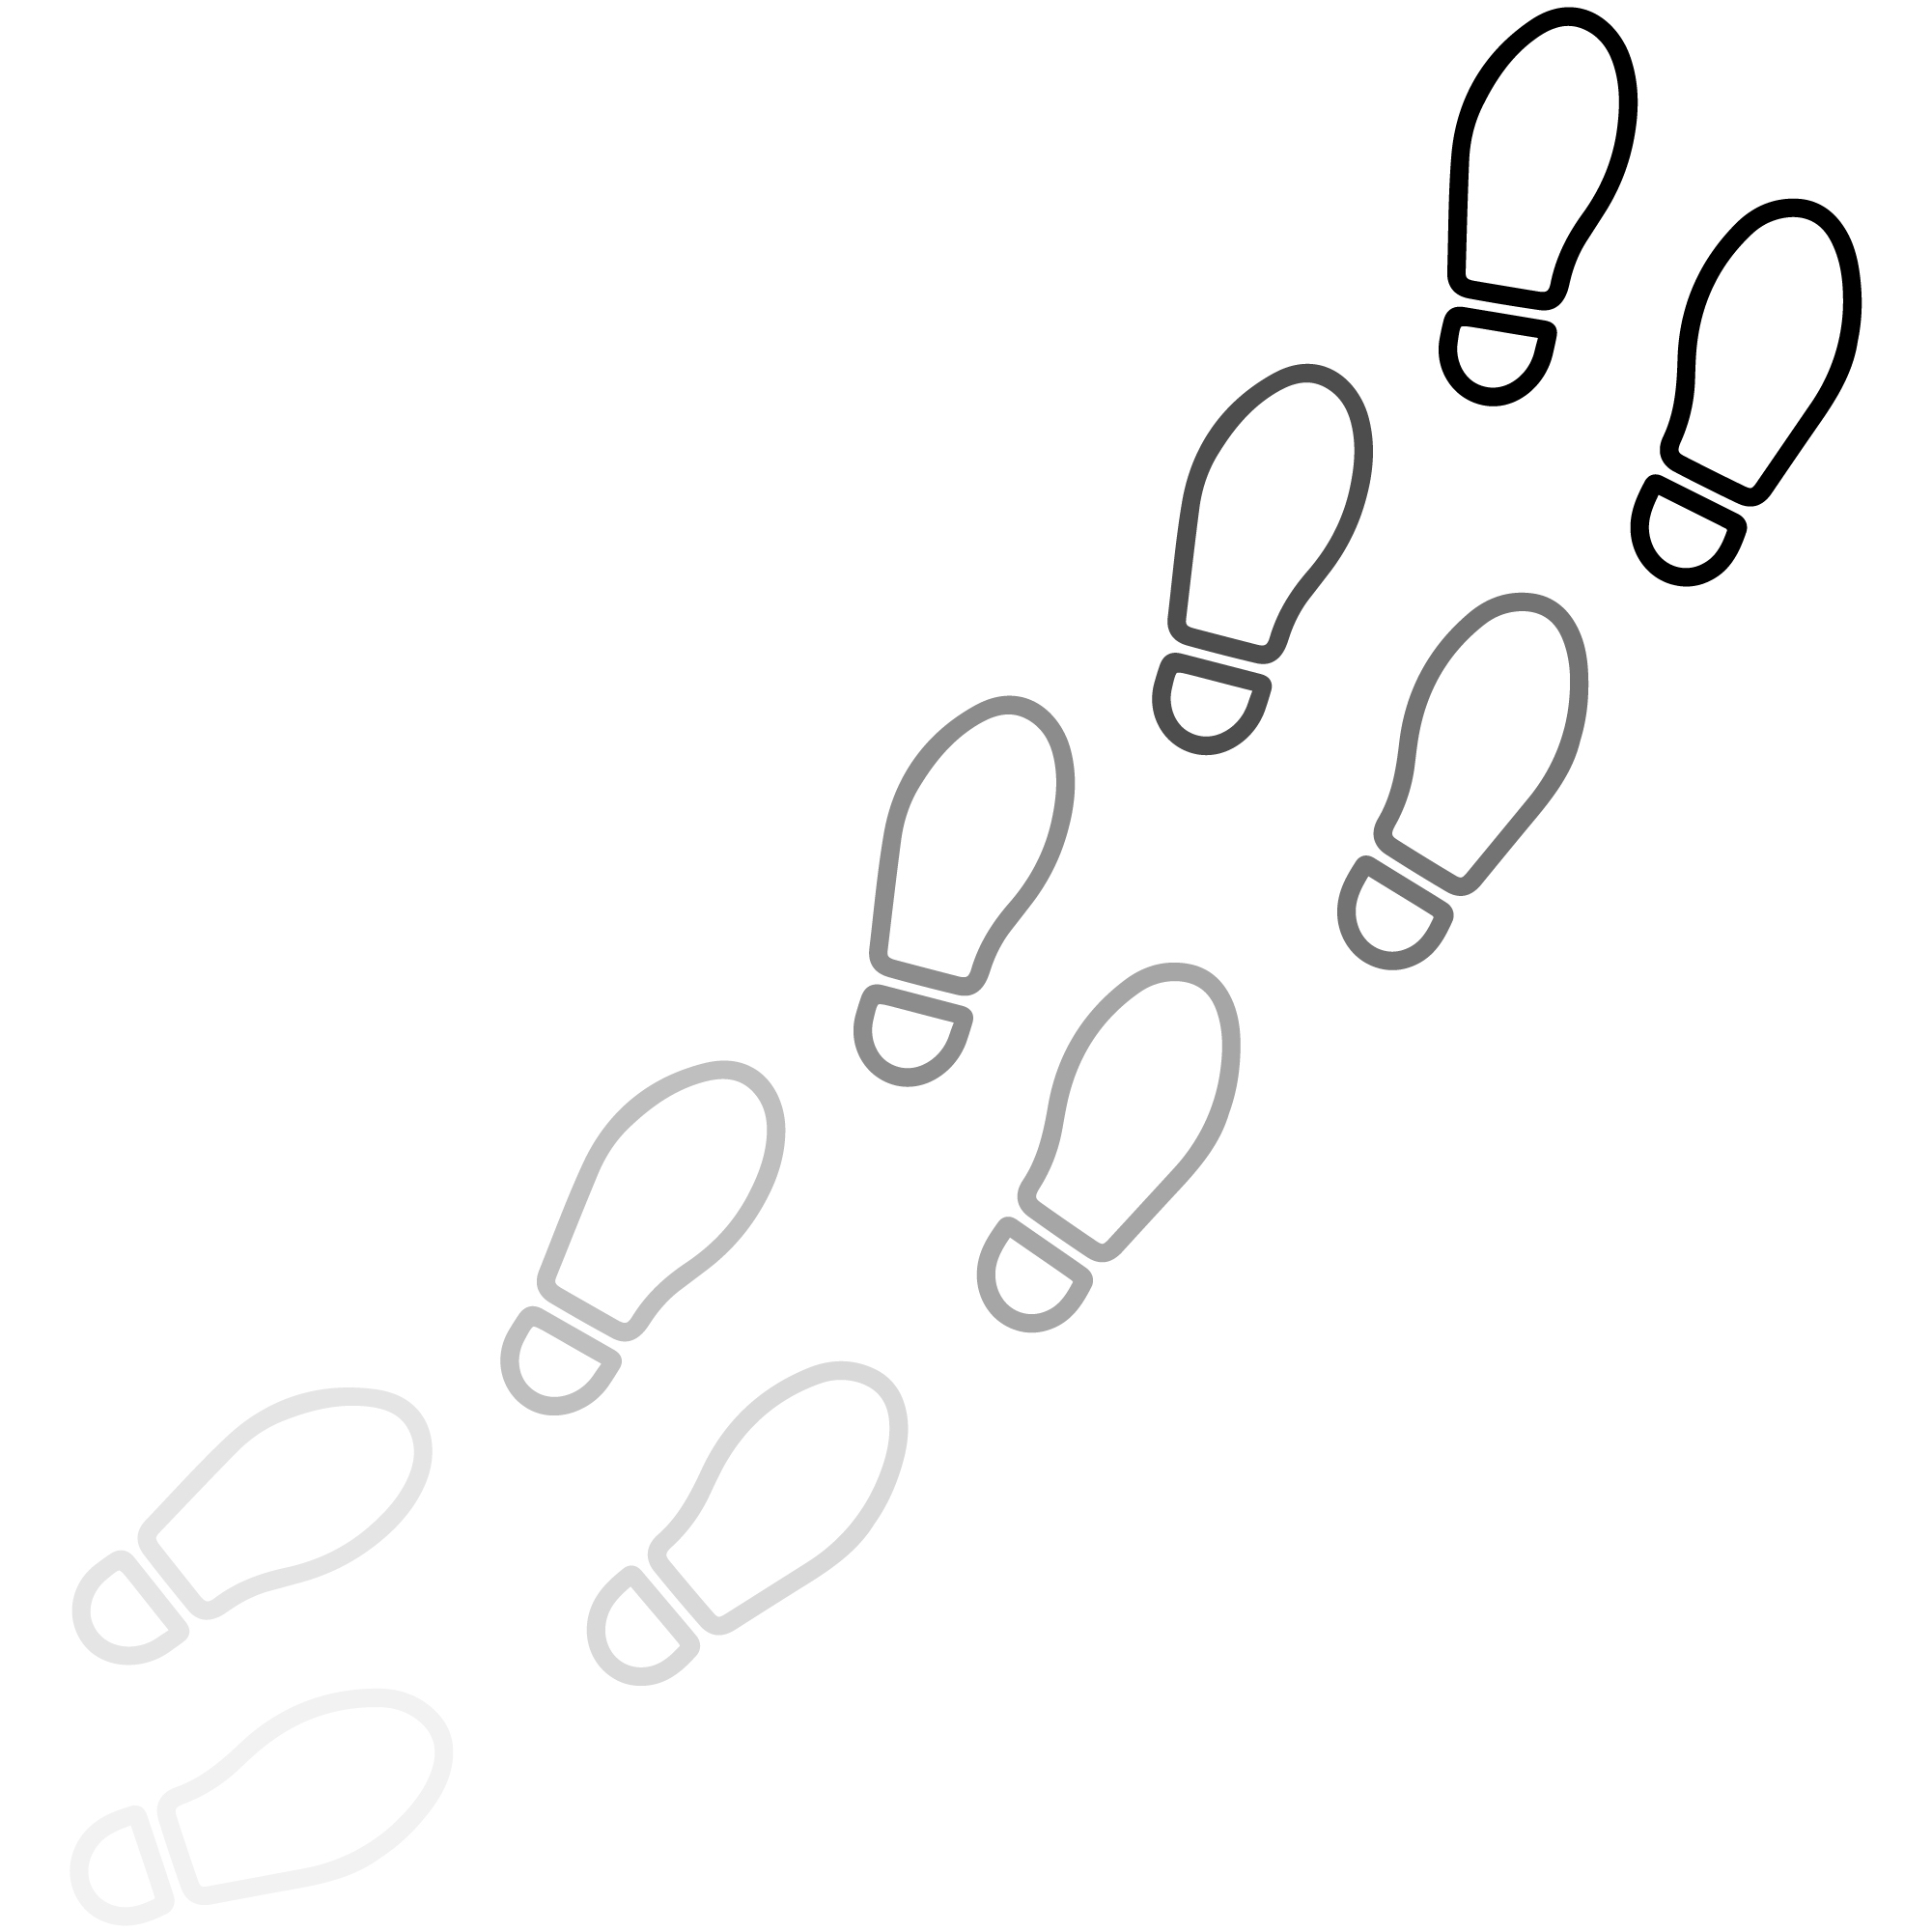 Image of footprints displaying longitudinal identifiers.